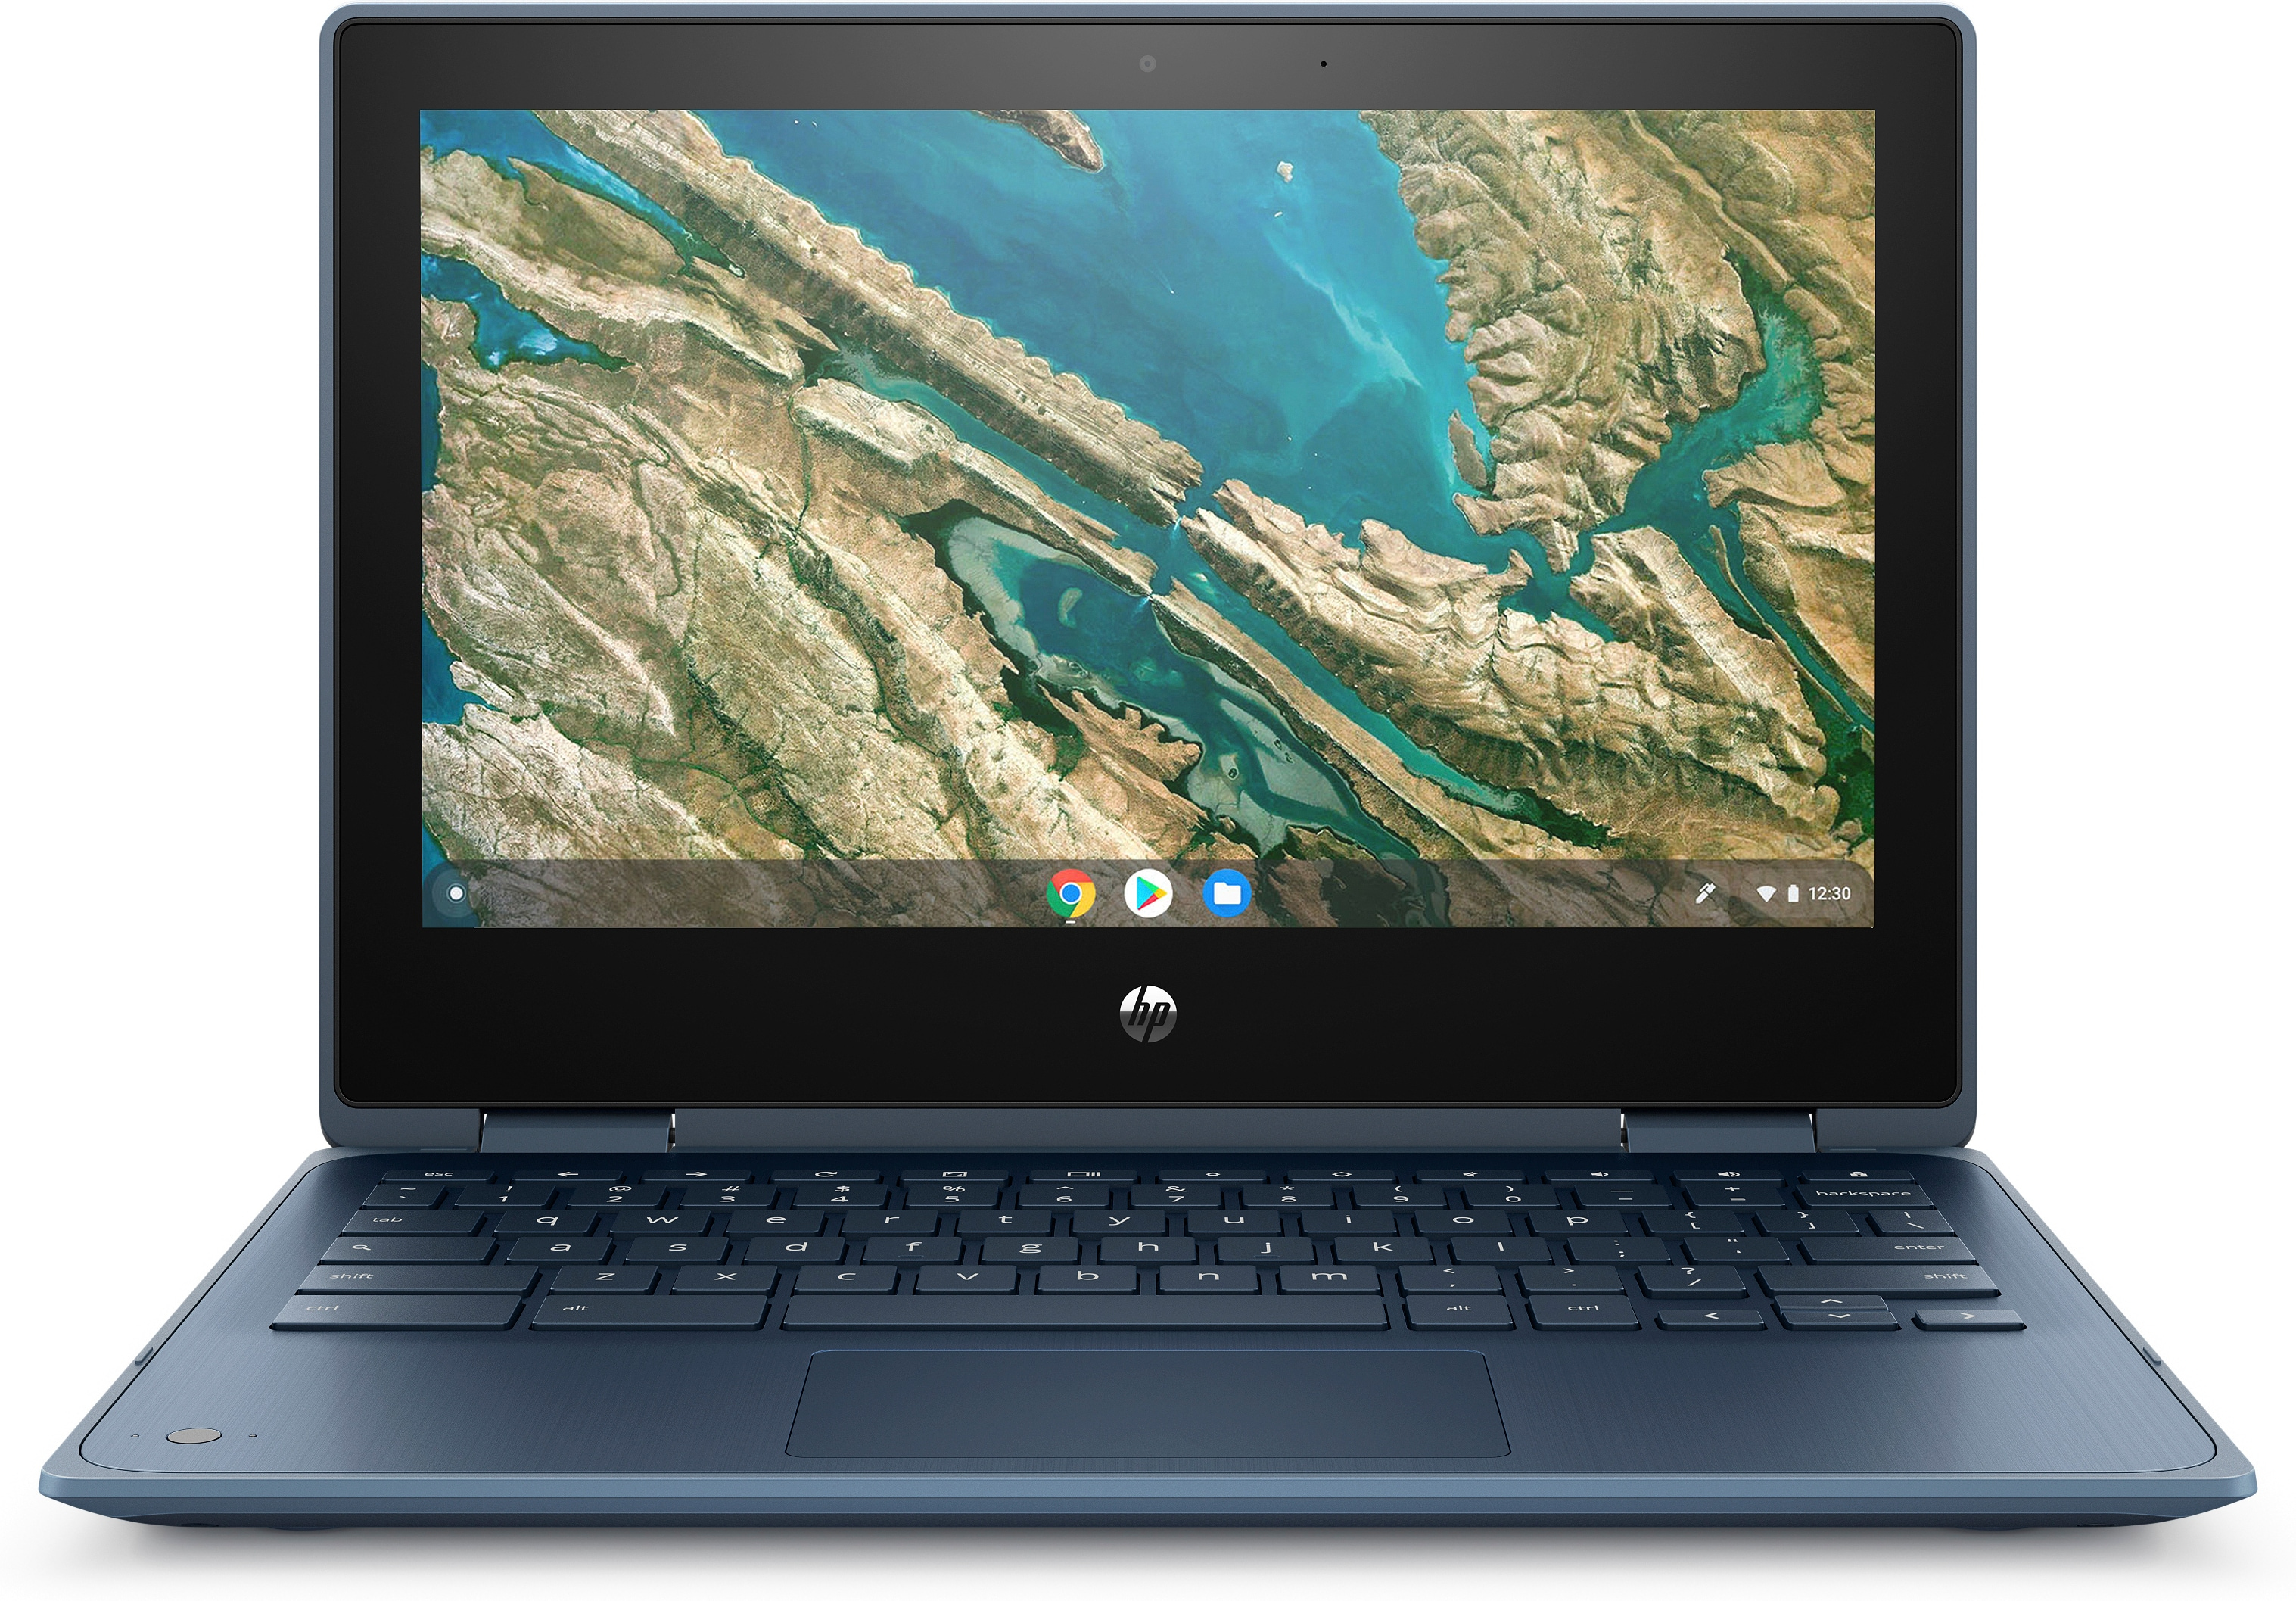 Notebook HP Chromebook x360 11 G3 EE N4020 29,5 cm (11.6